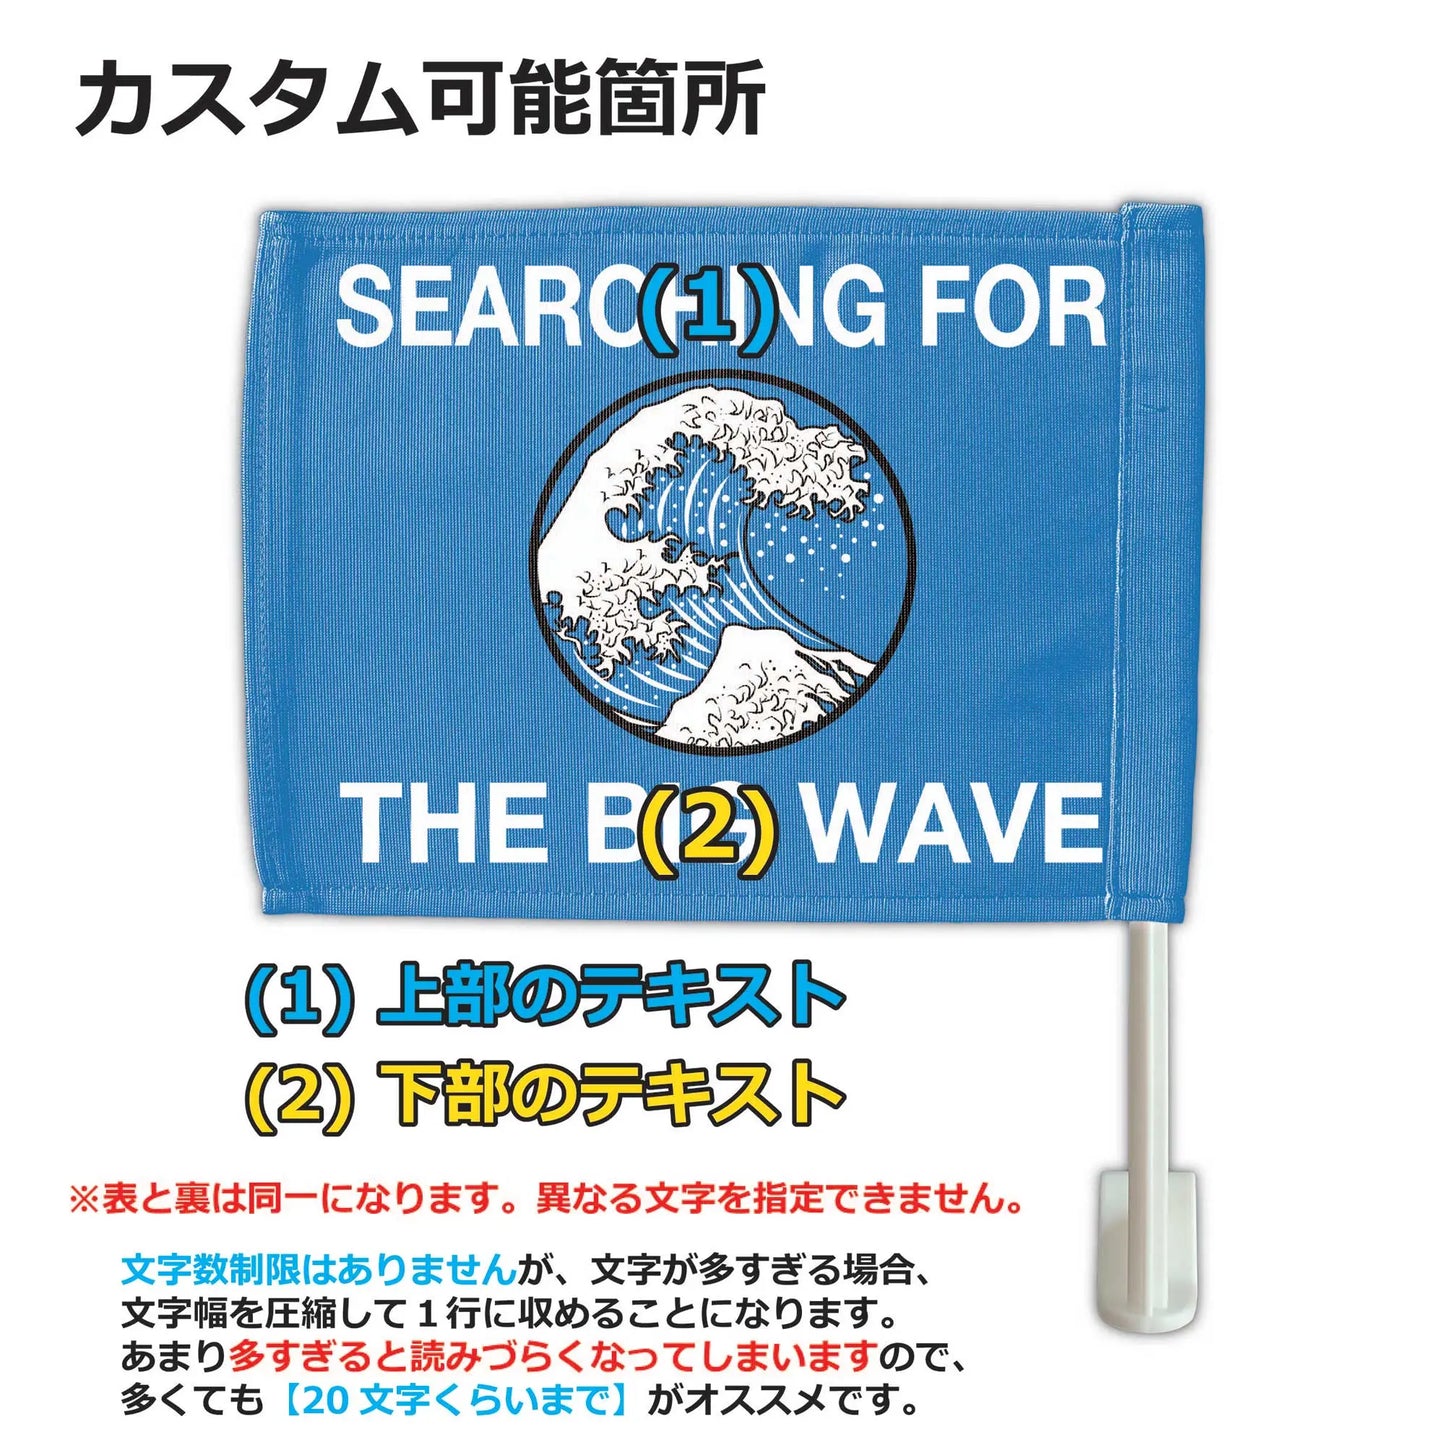 【カーフラッグ】BIG WAVE/ビッグウェーブ/自動車用オリジナルフラッグ・旗 PL8HERO